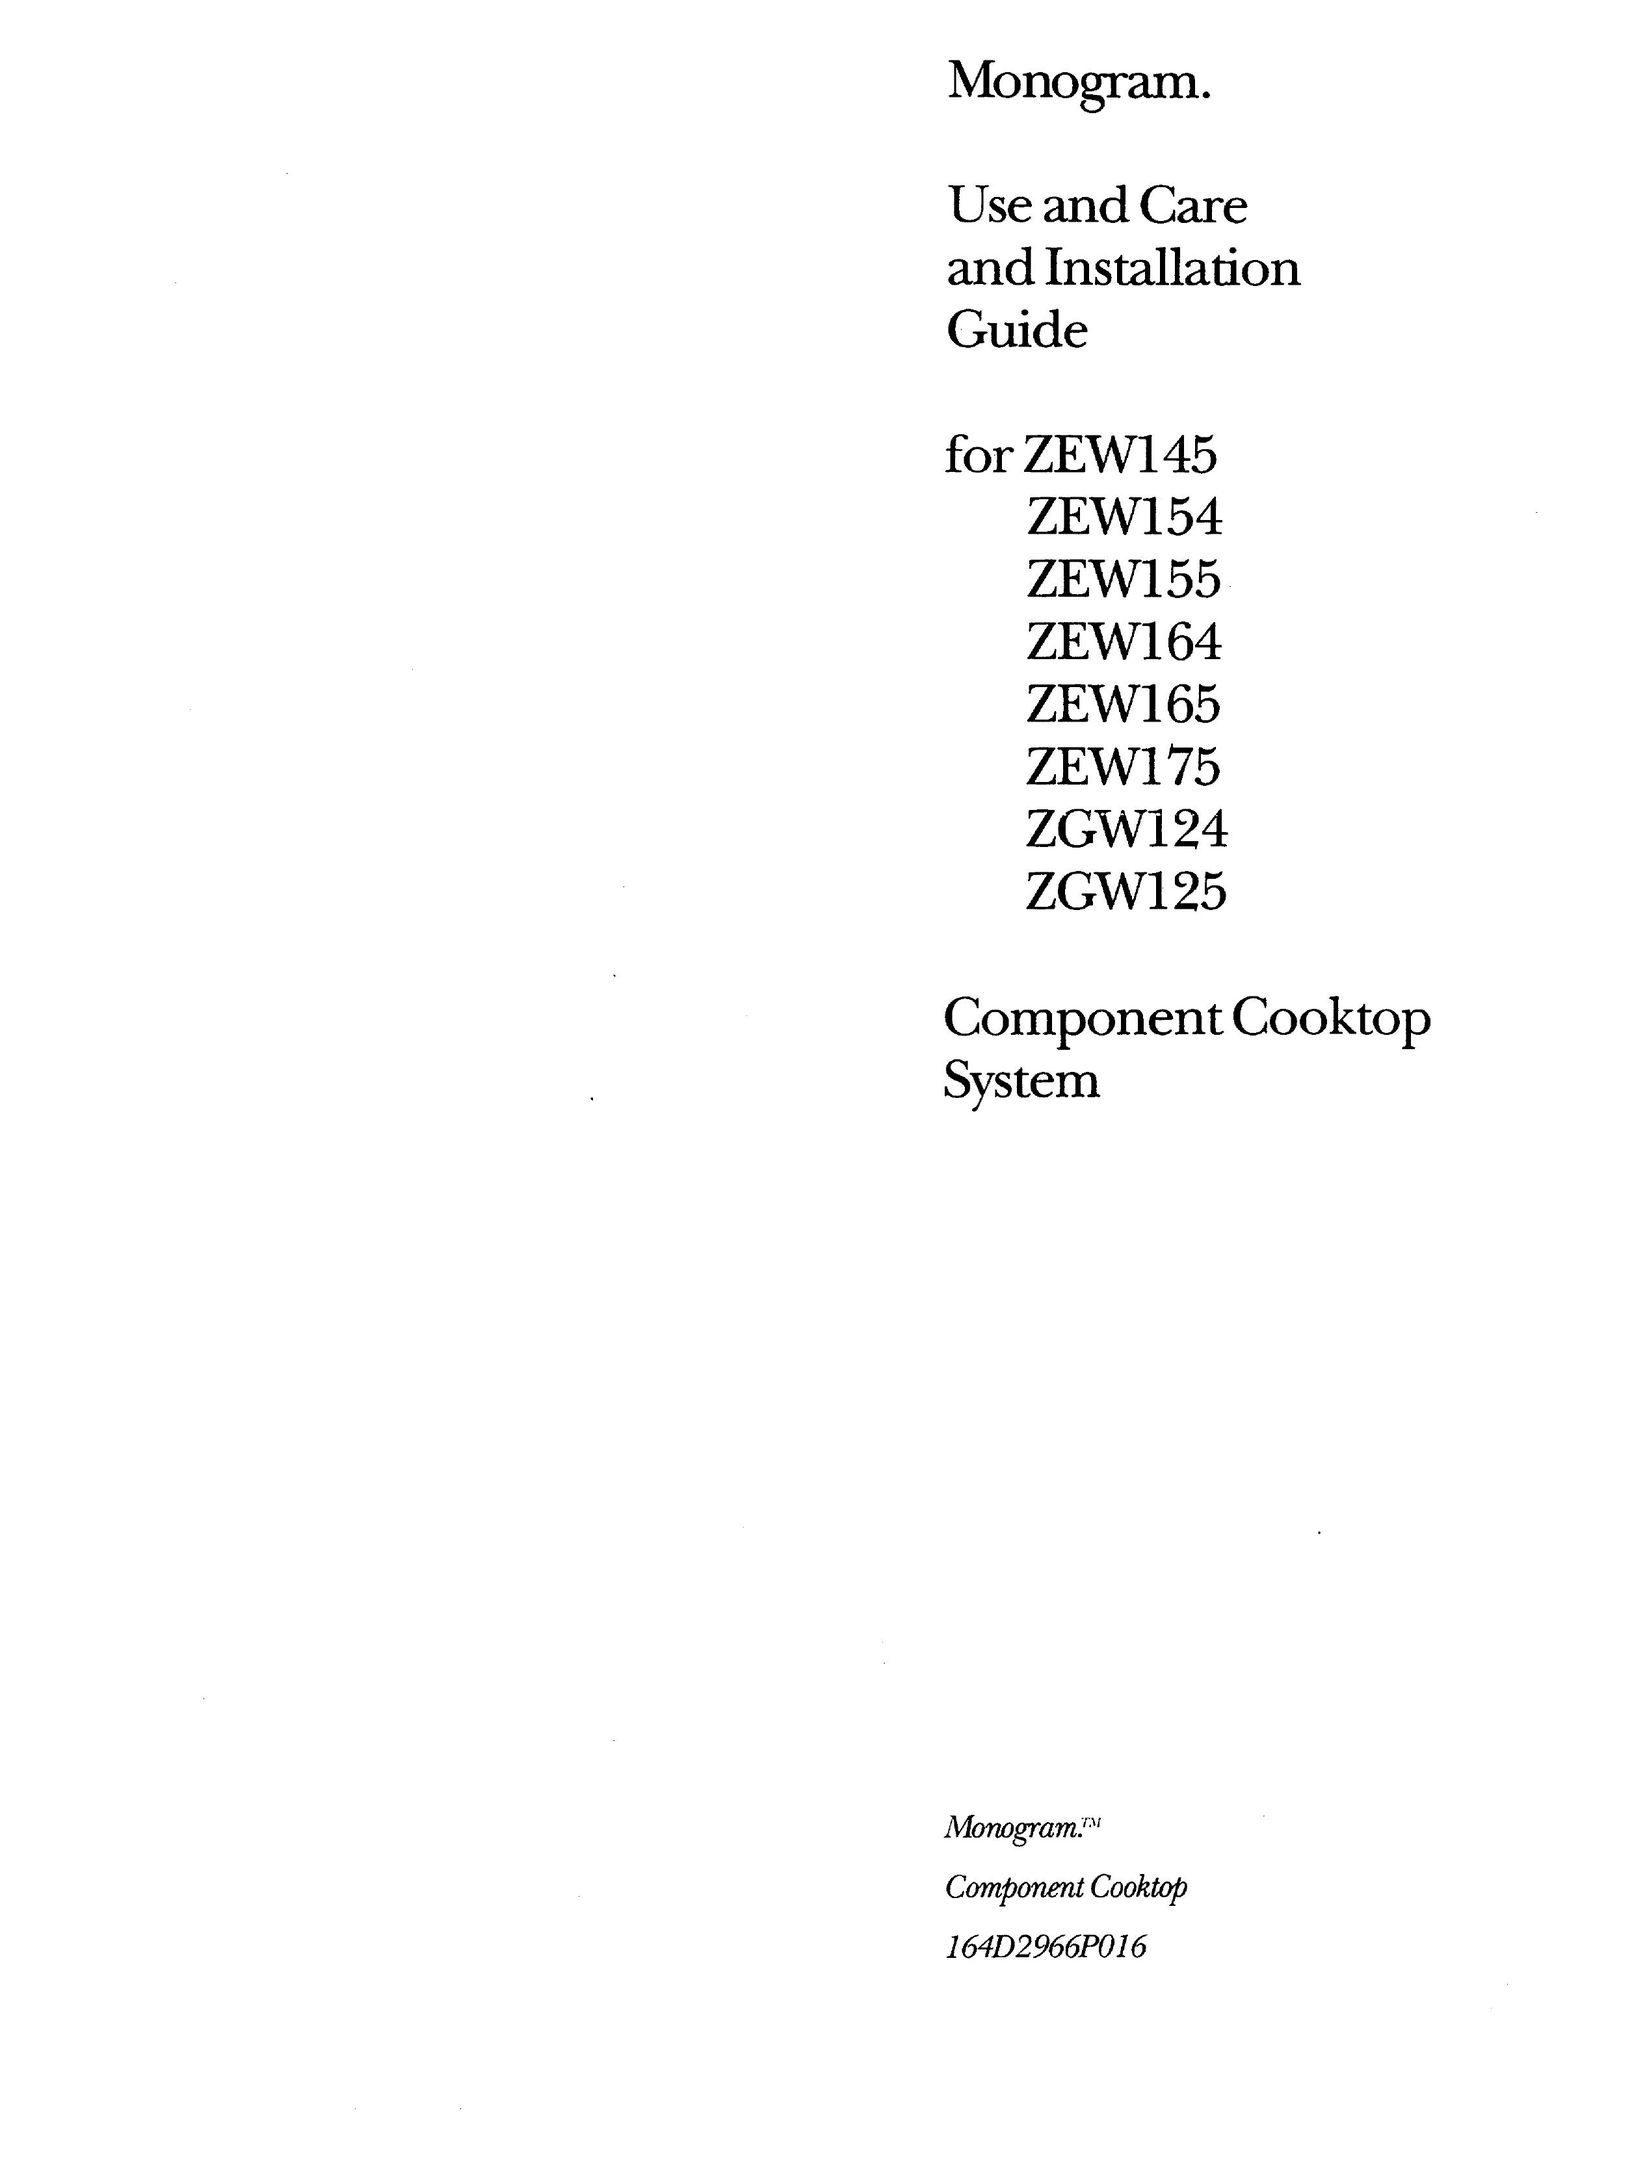 GE Monogram ZEW154 Cooktop User Manual